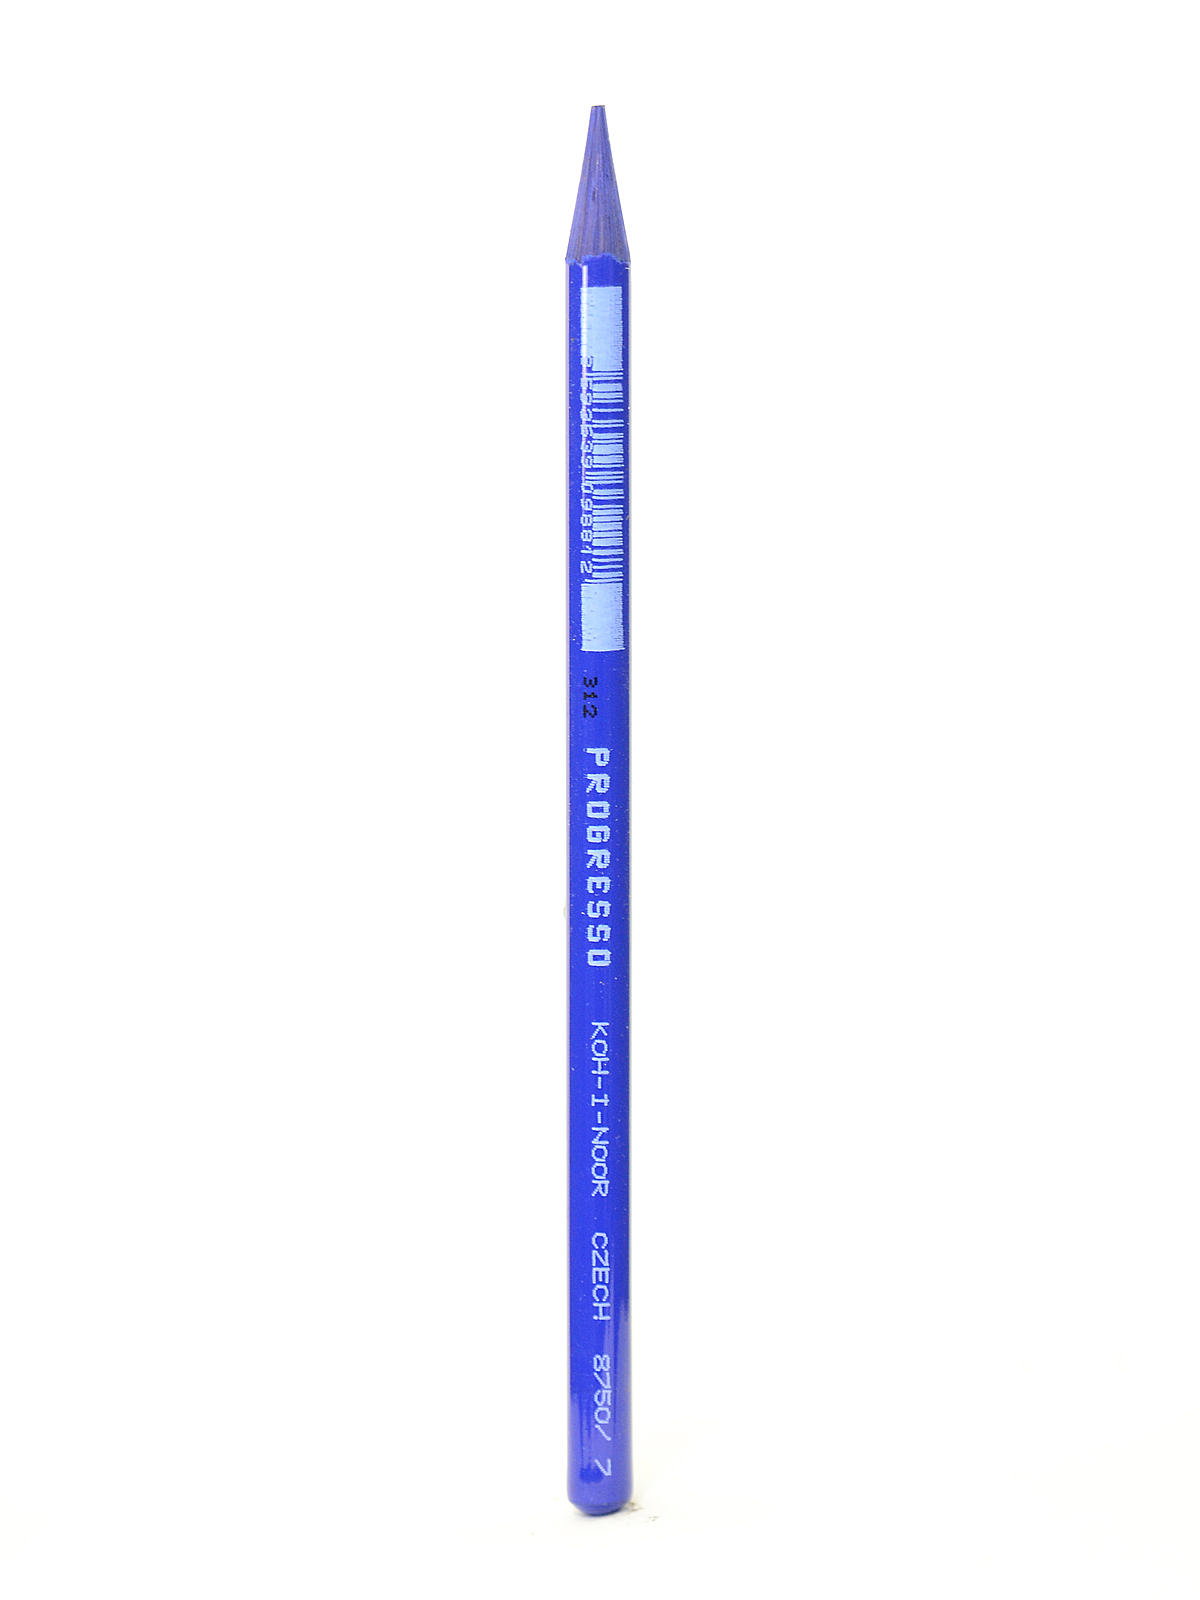 KOH-I-NOOR Progresso Woodless Graphite Pencil Set (Set of 6)